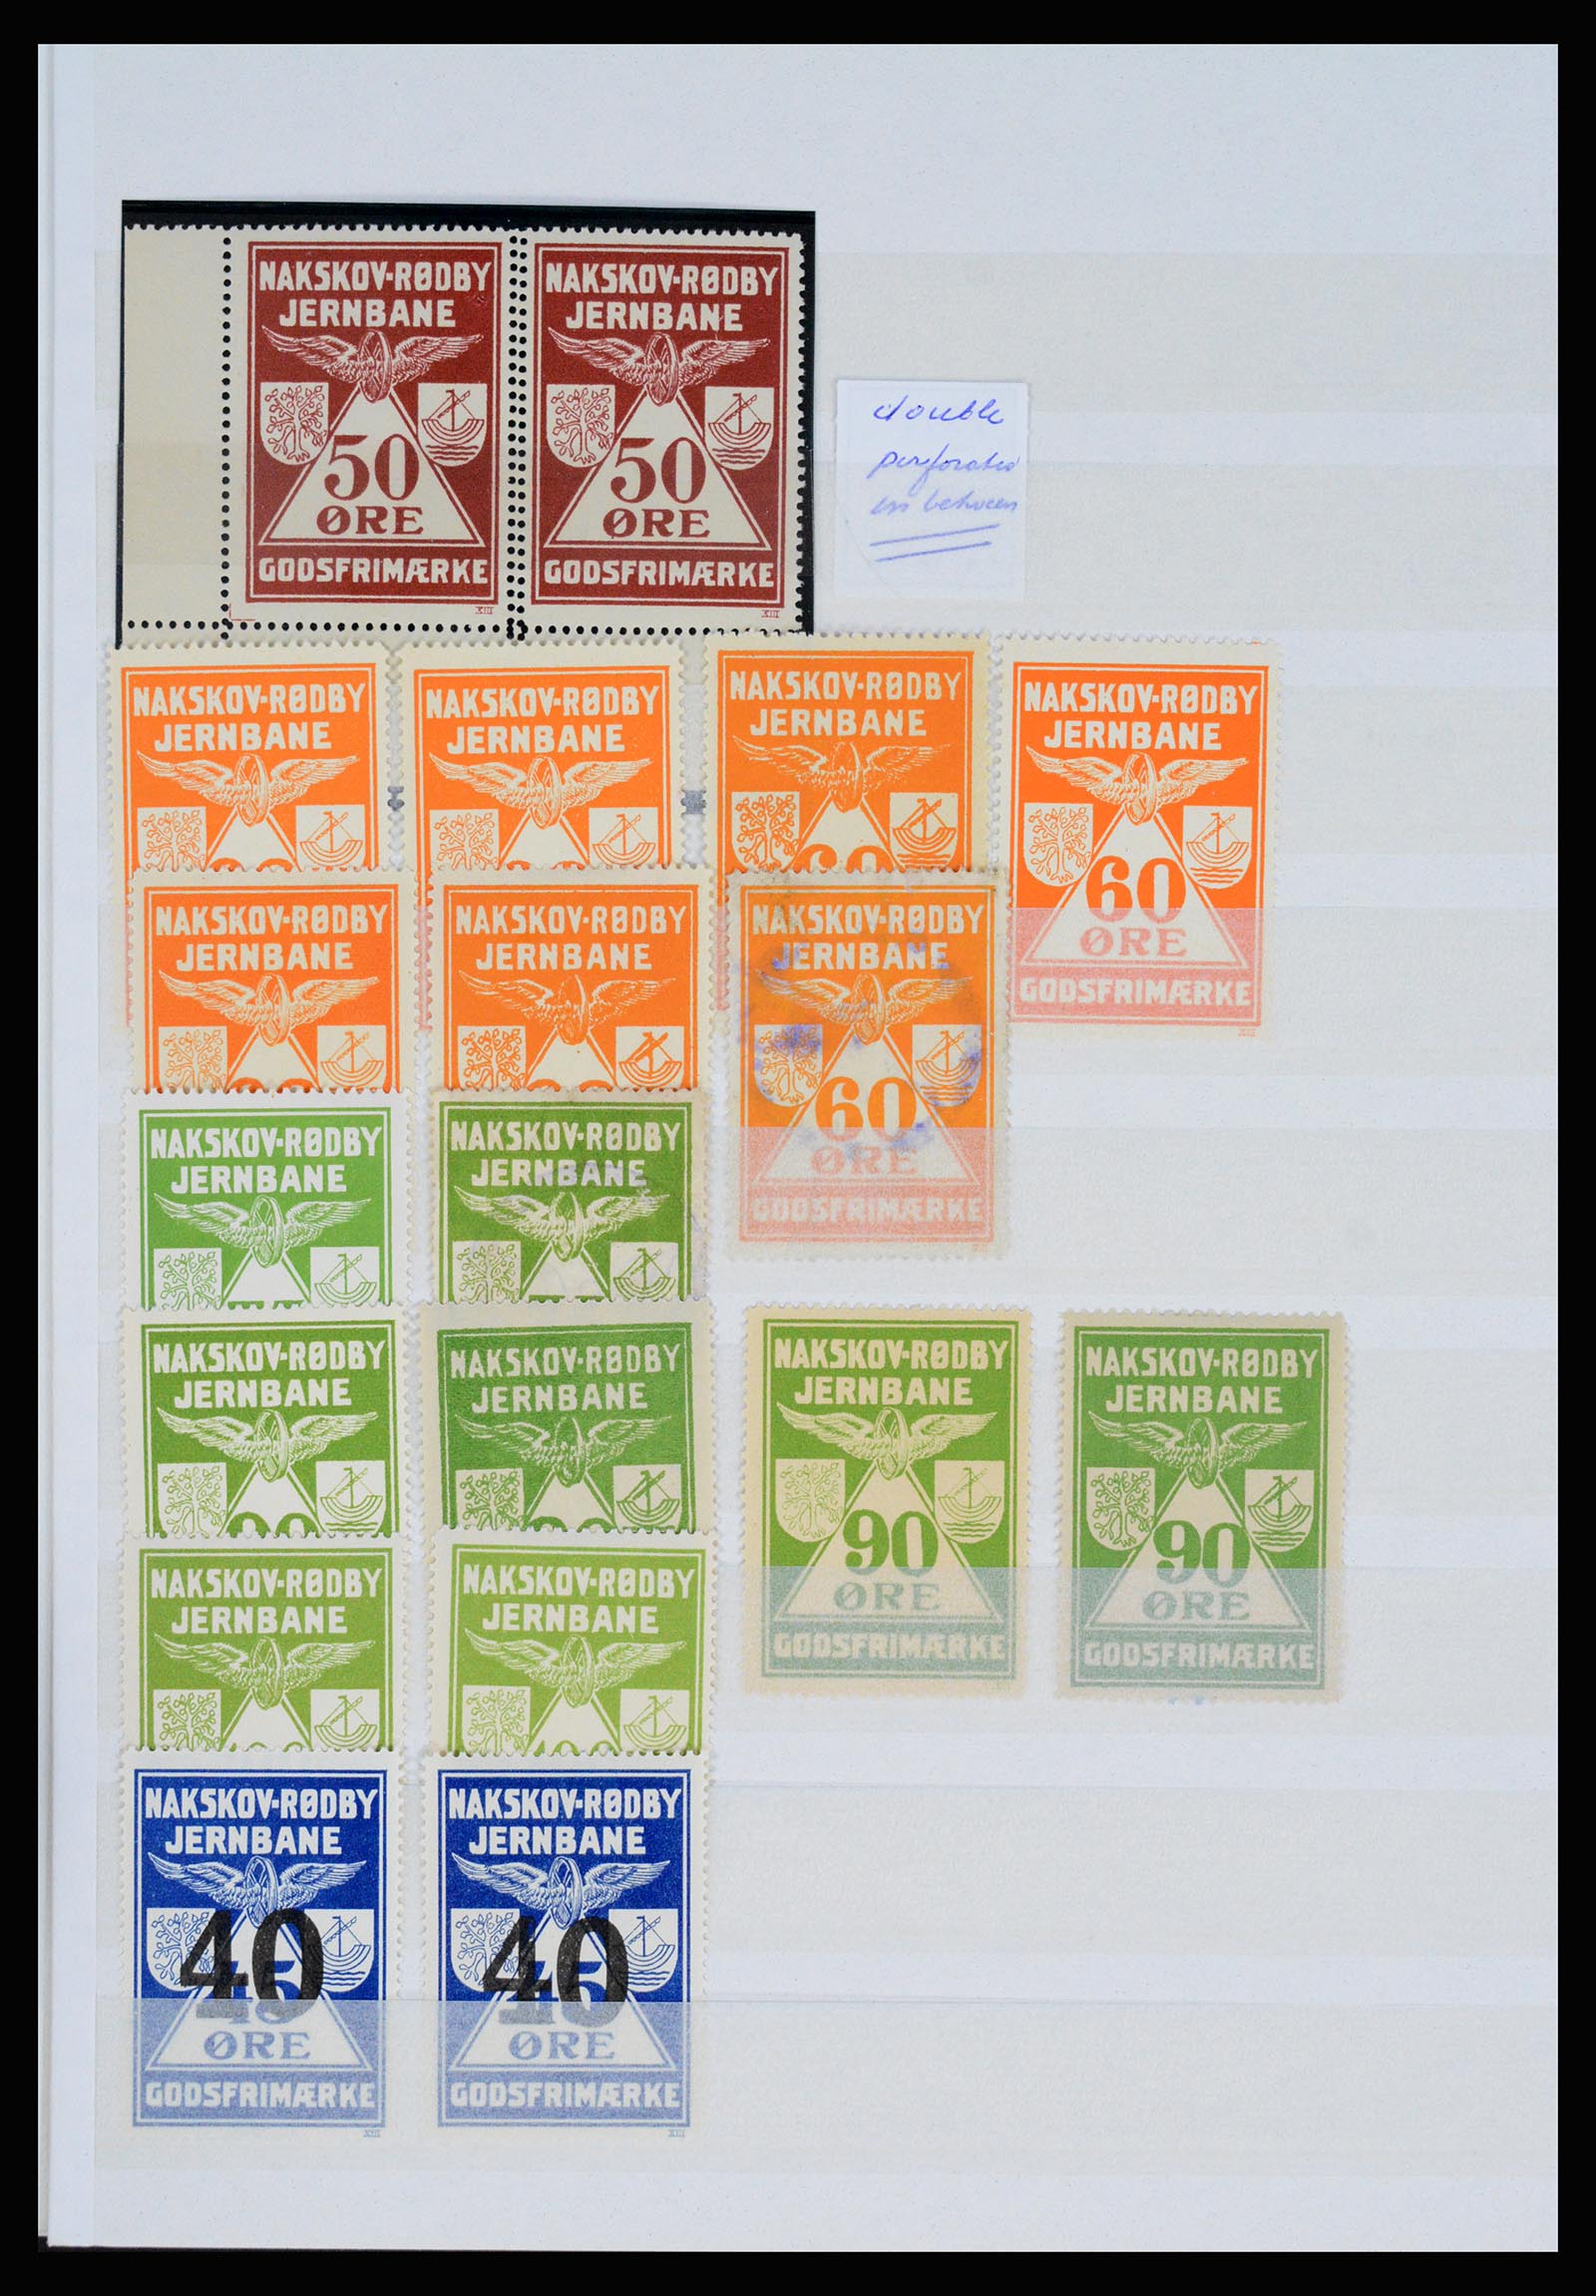 36982 103 - Postzegelverzameling 36982 Denemarken spoorwegzegels.